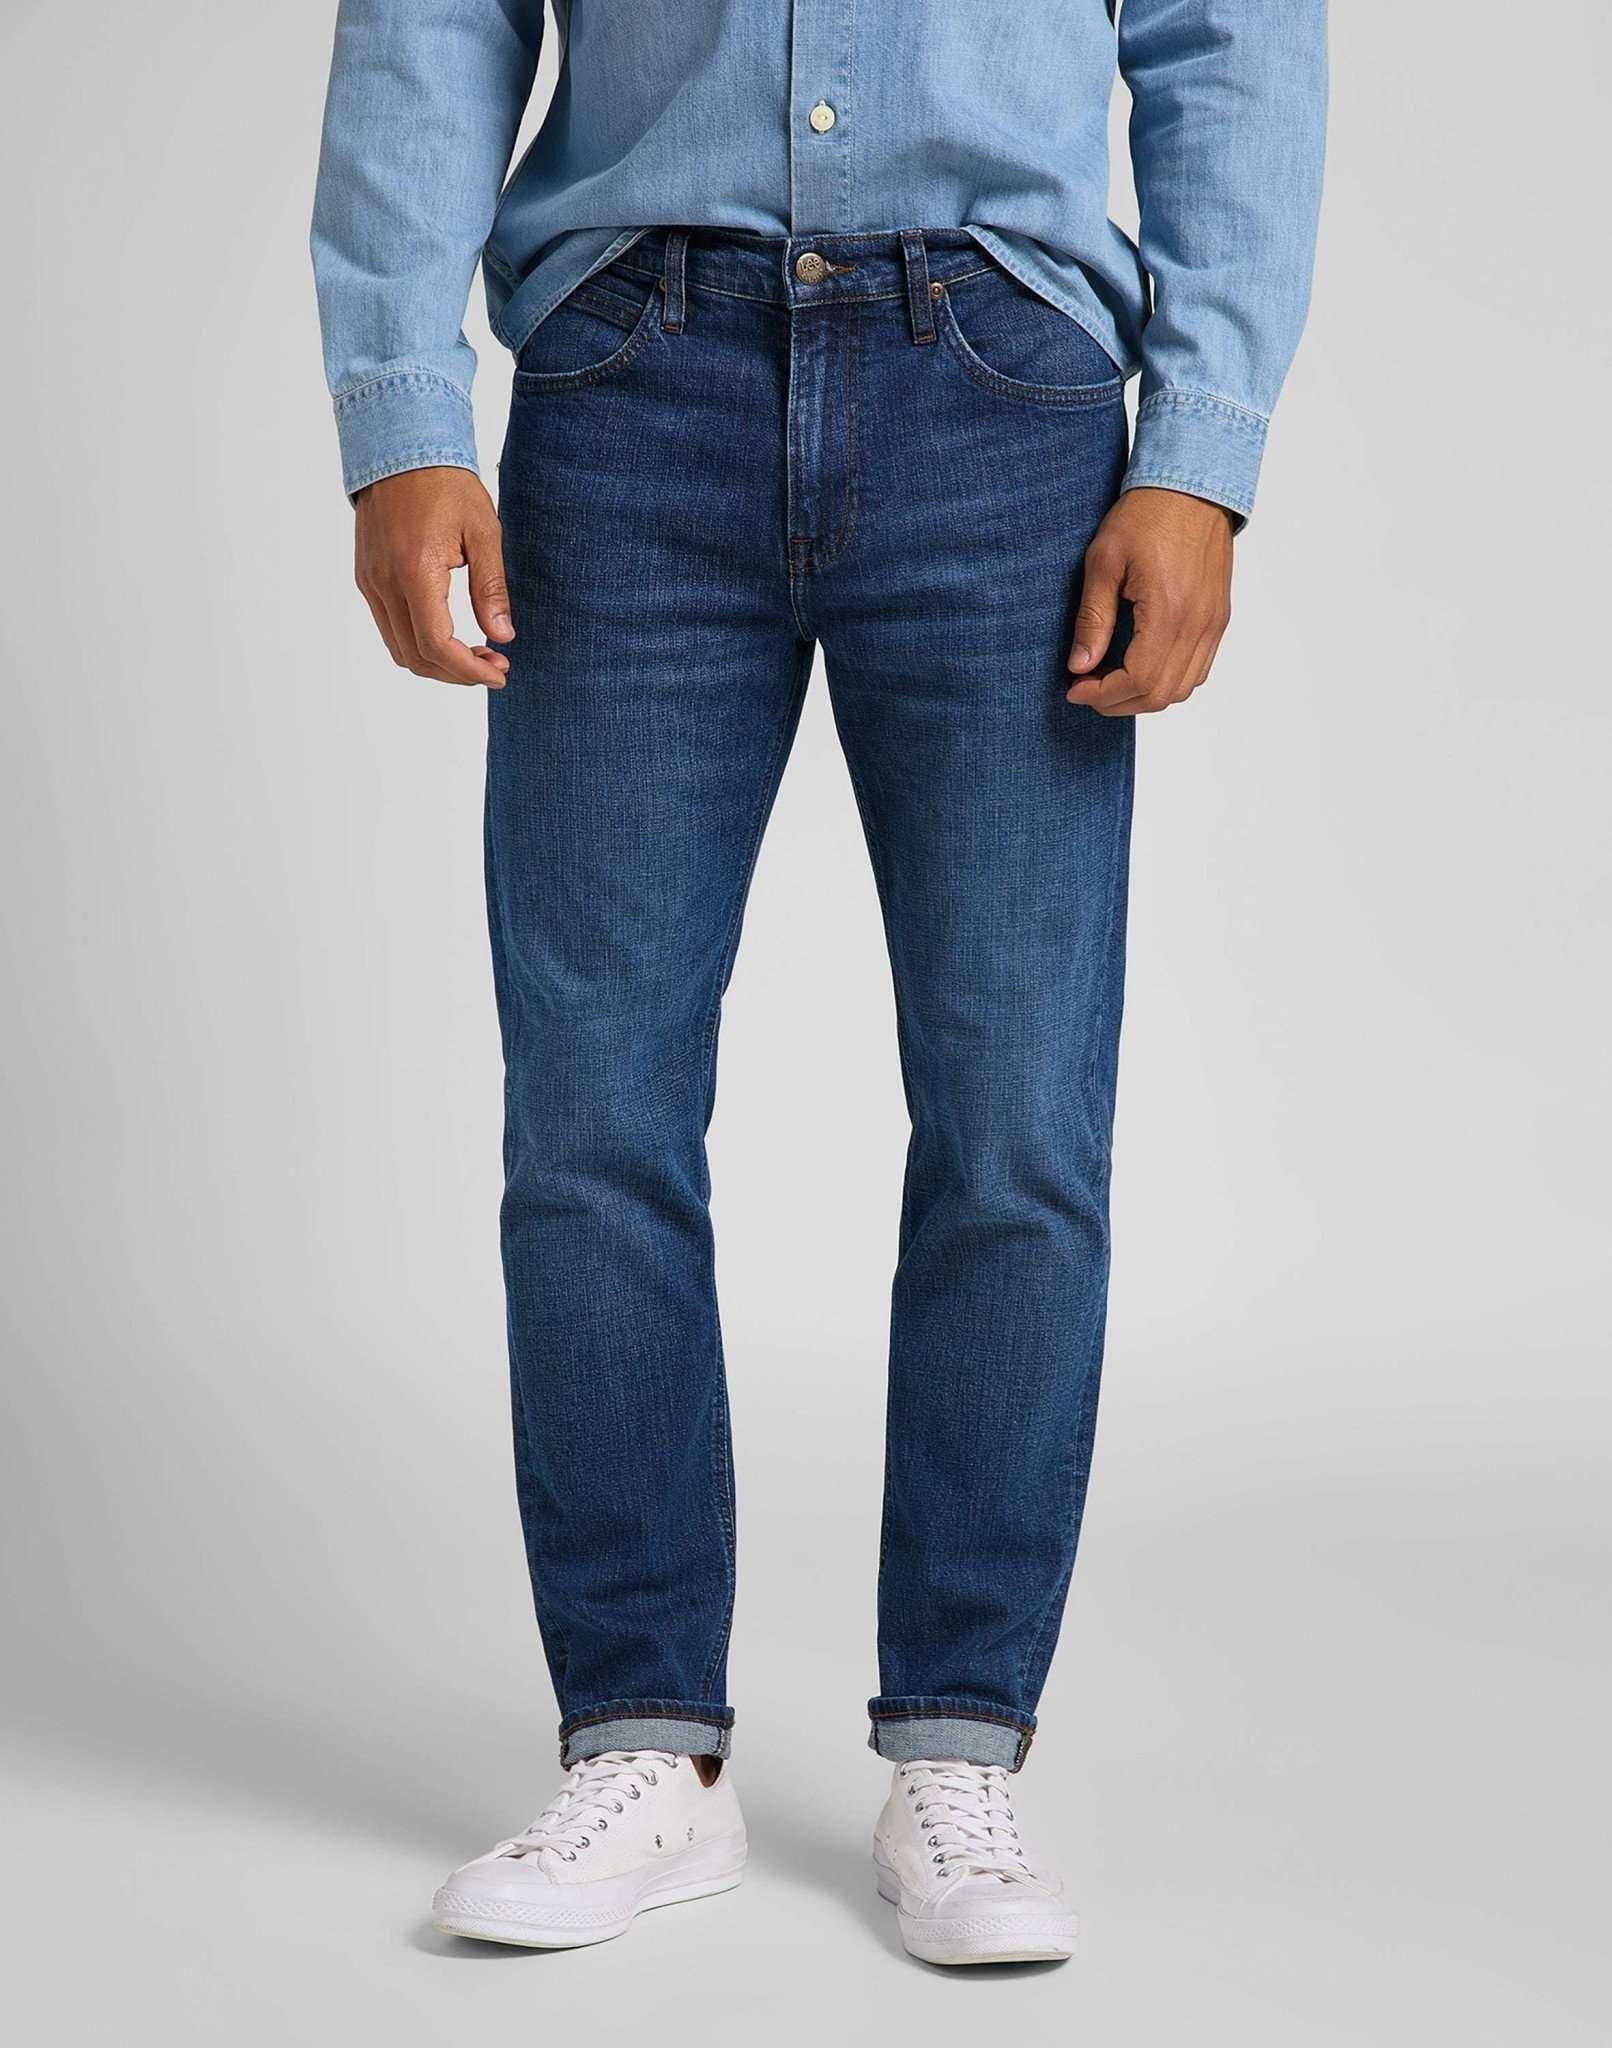 Jeans Straight Leg Austin Herren Blau Denim L32/W29 von Lee